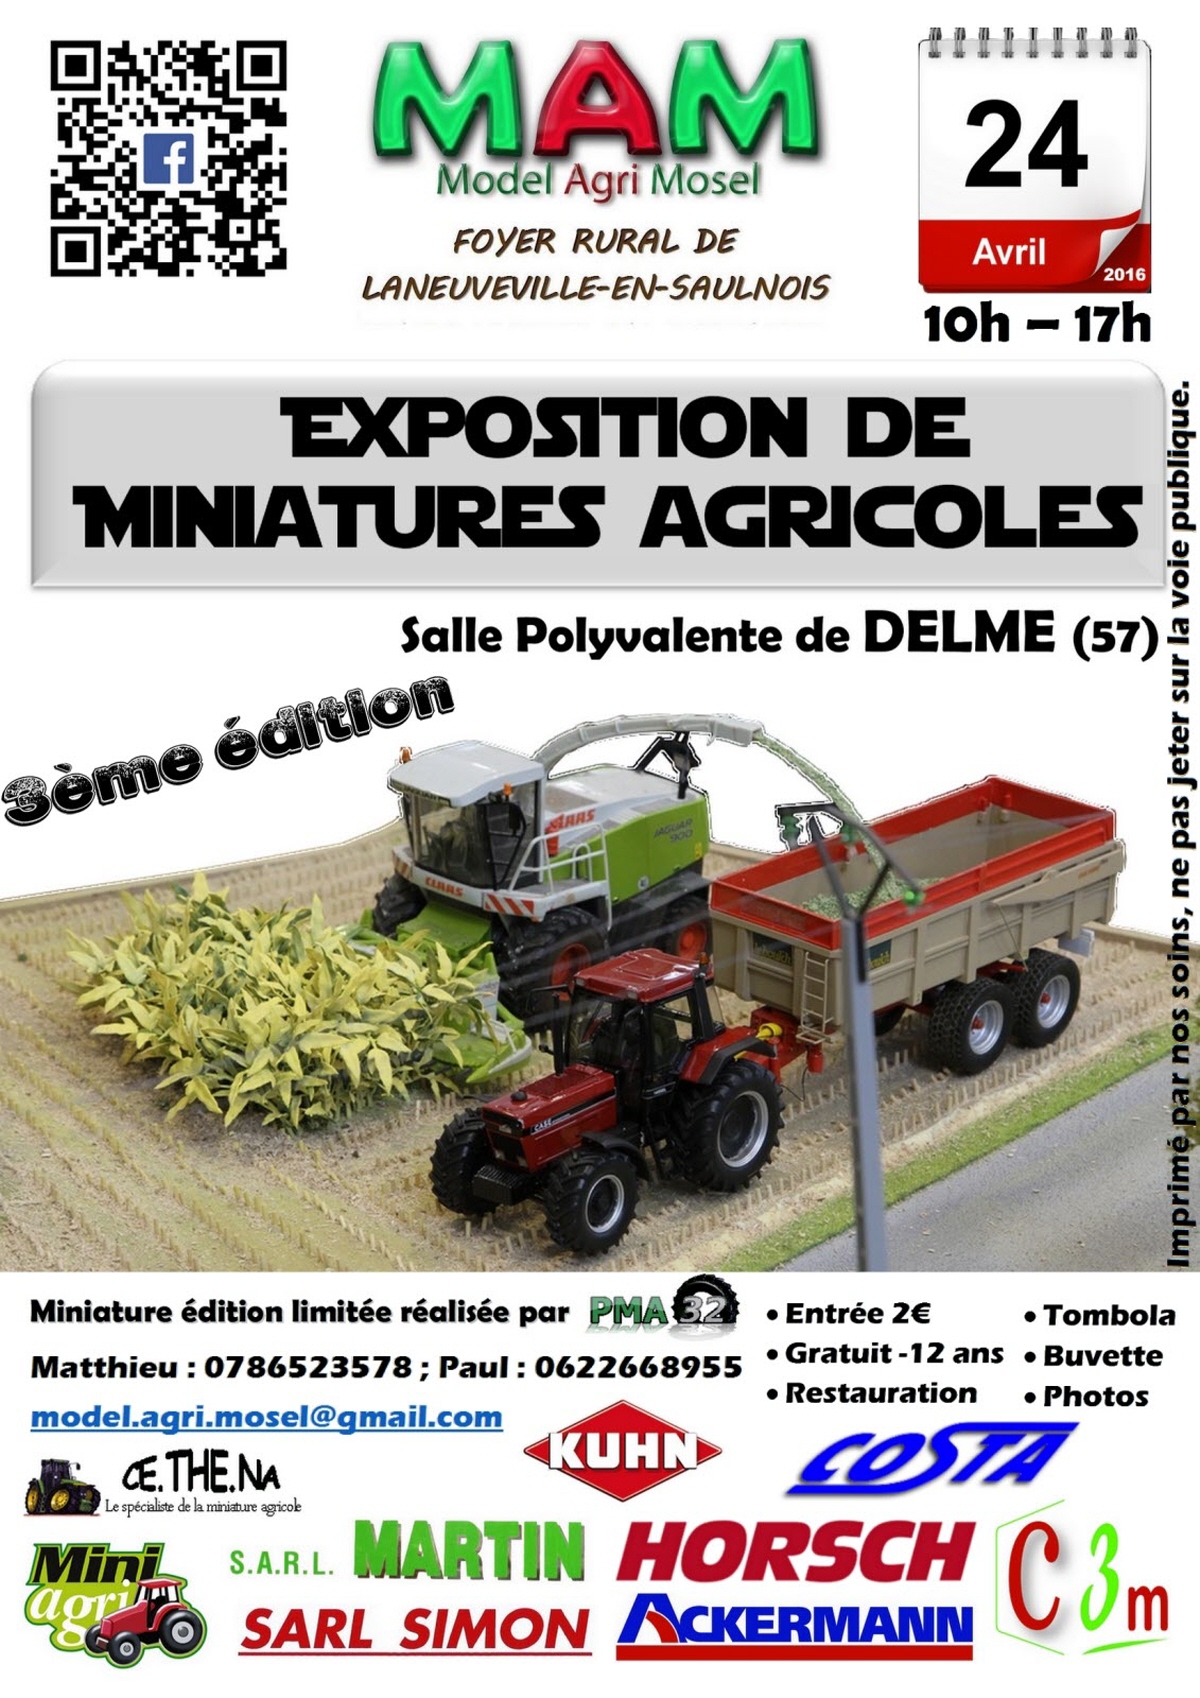 La 13e édition de l'exposition de miniatures agricoles a lieu dimanche